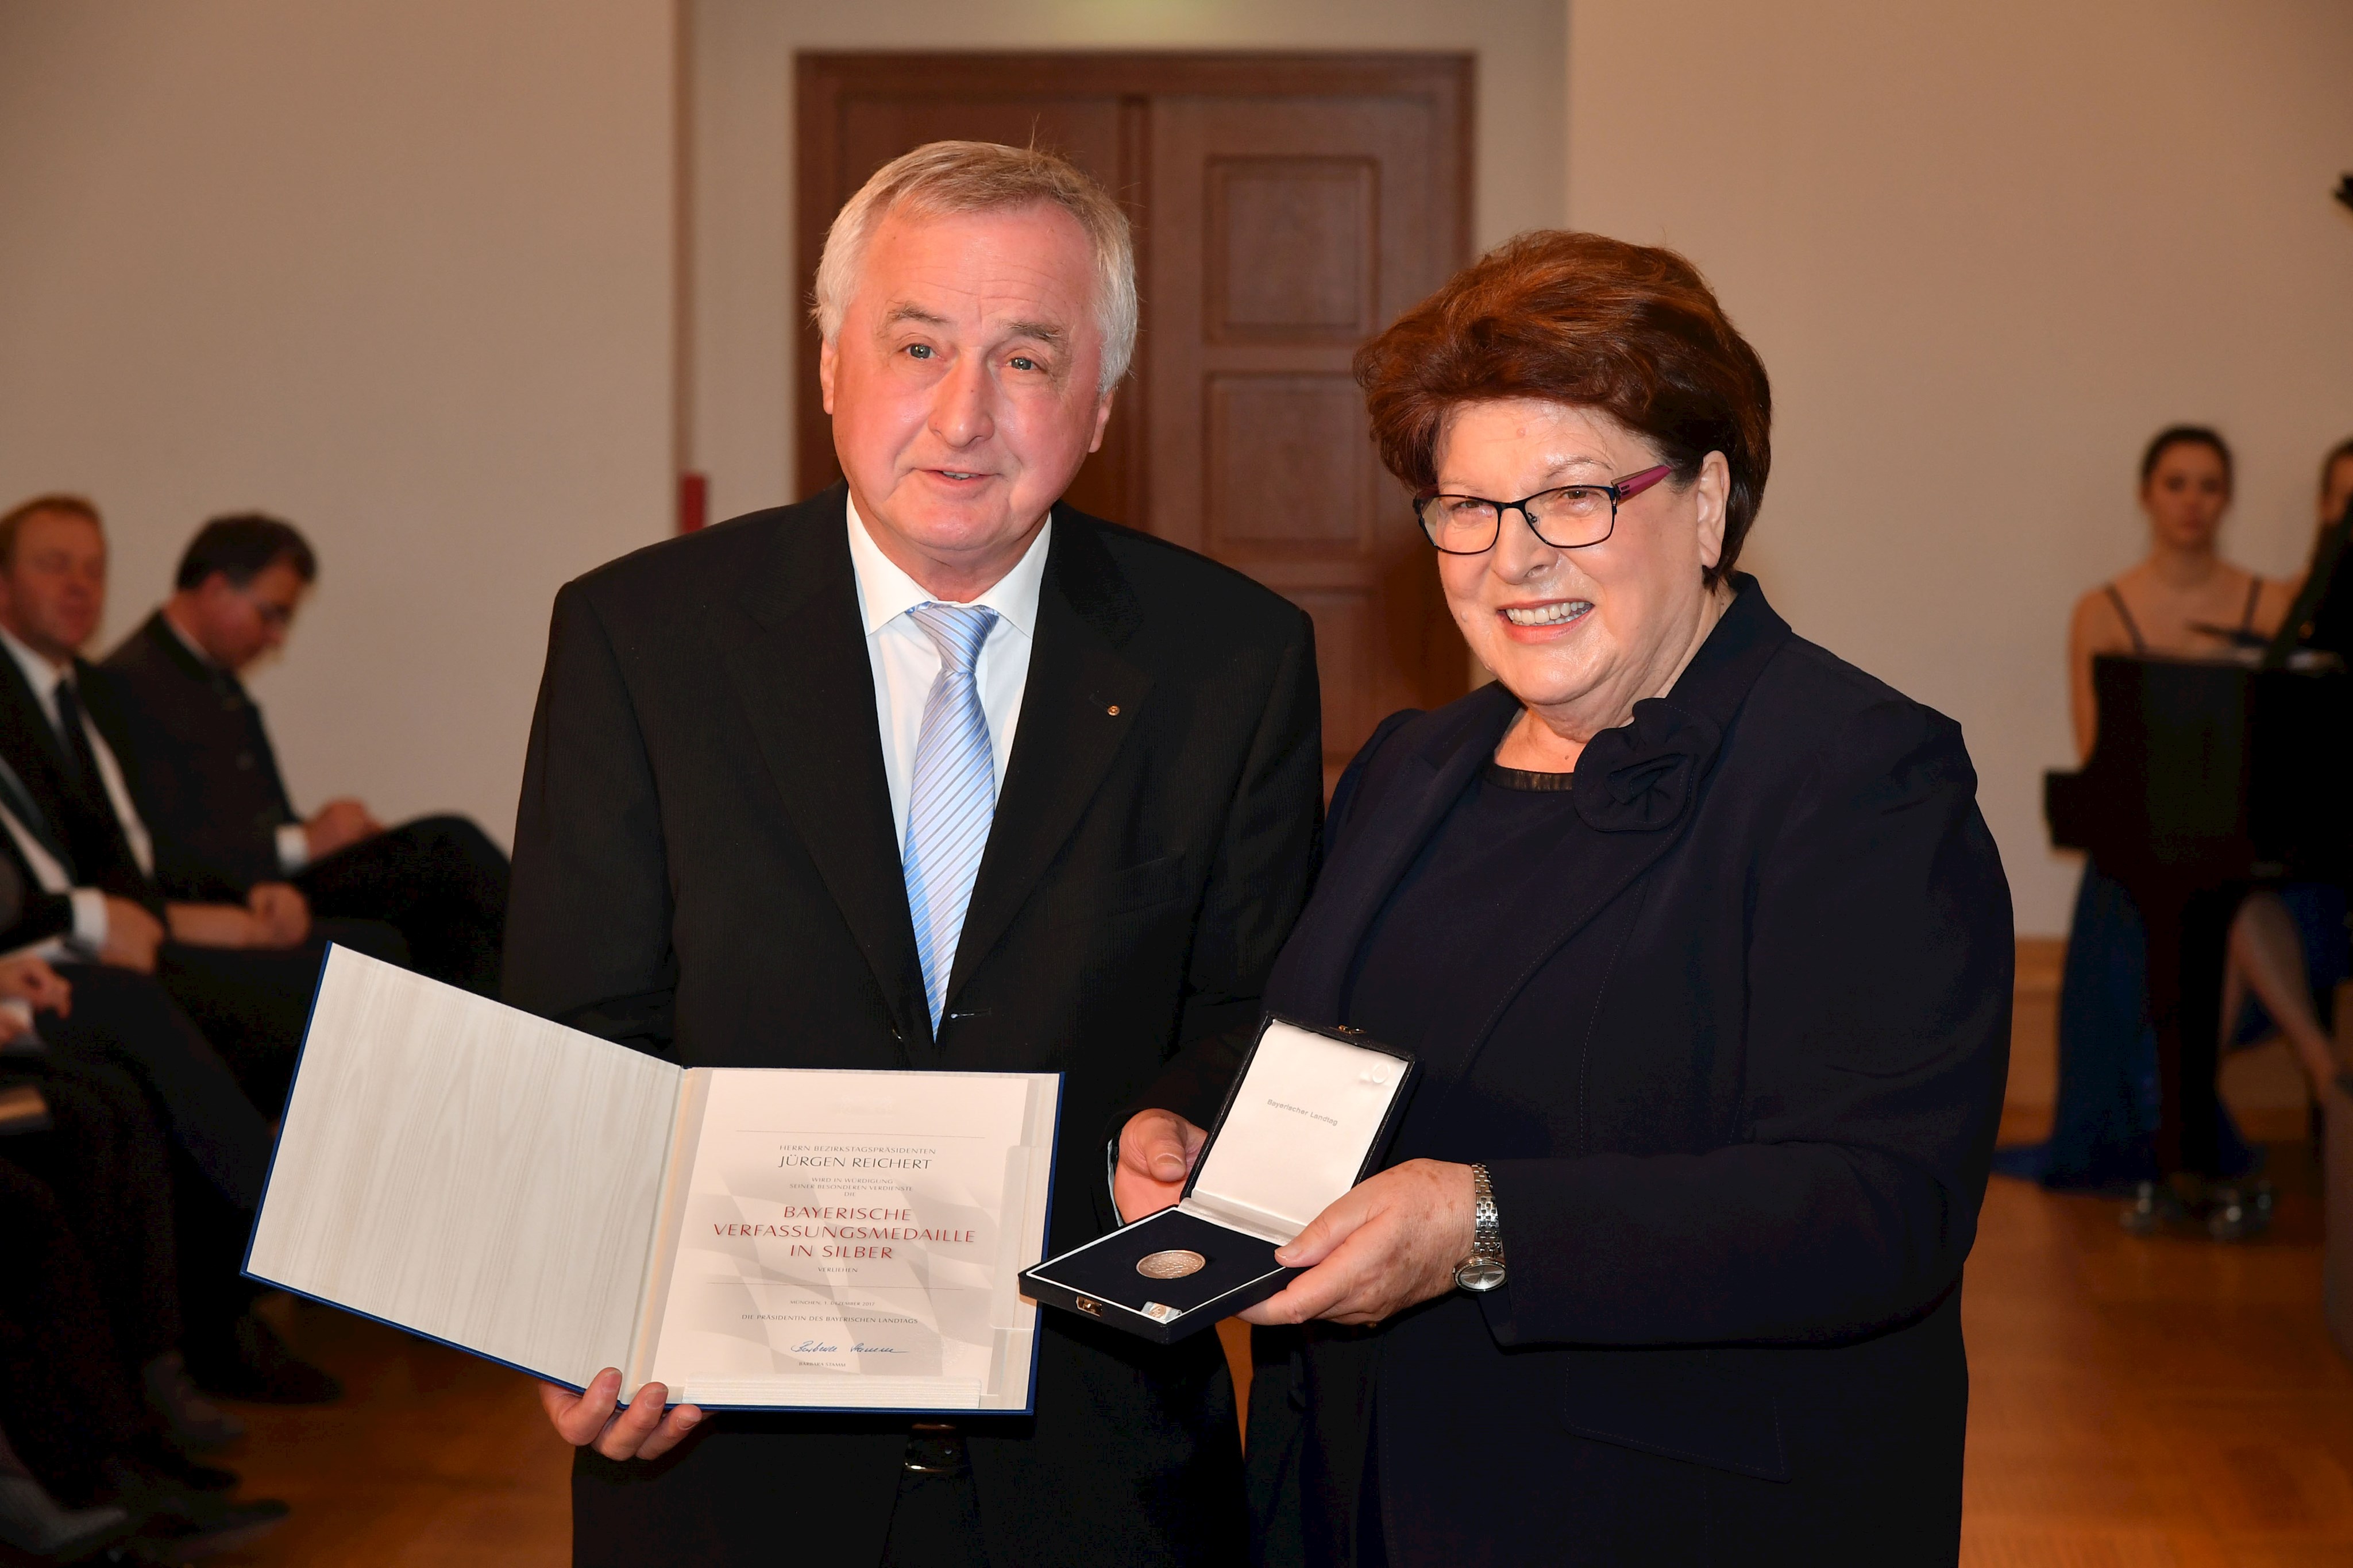 Landtagspräsidentin Barbara Stamm (rechts) überreichte Bezirkstagspräsident Reichert die Bayerische Verfassungsmedaille in Silber.